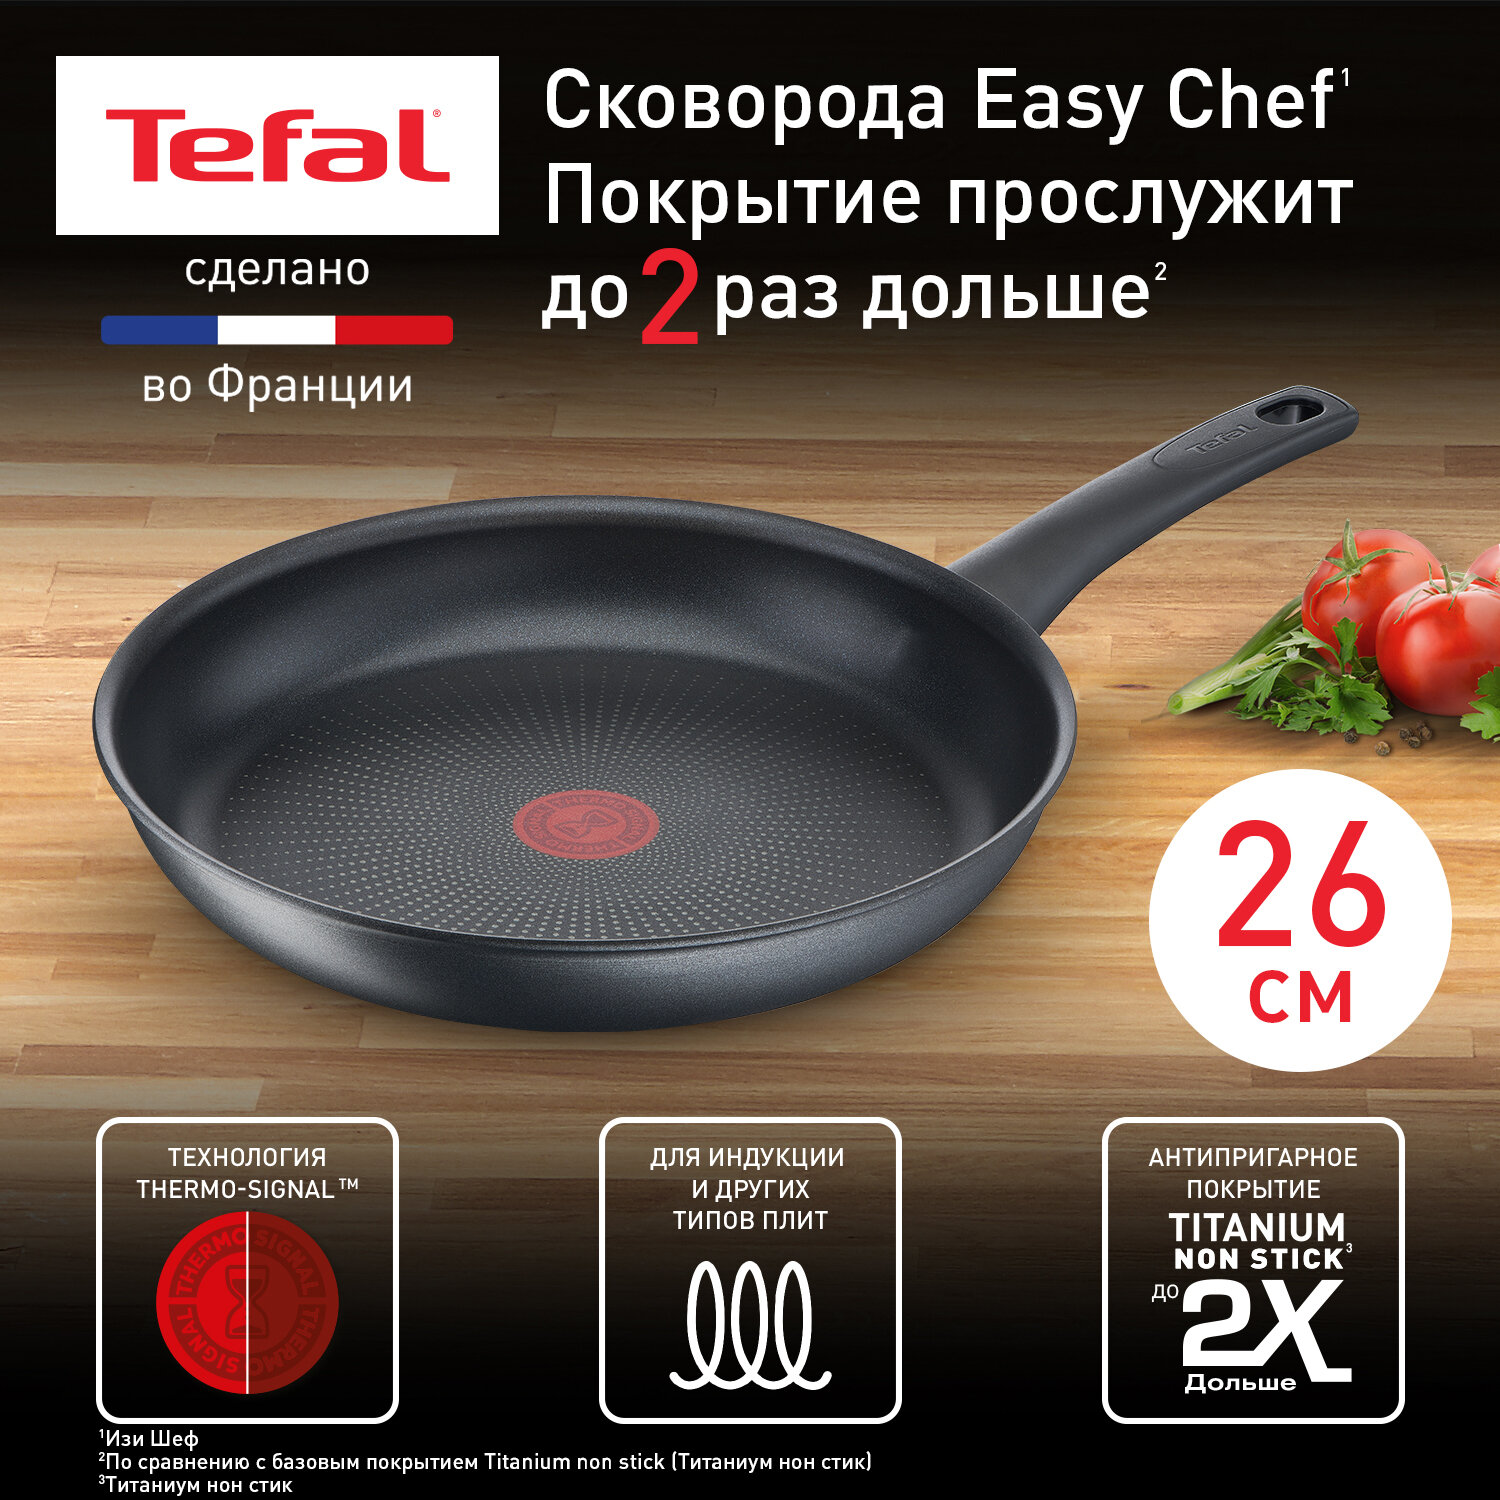 Сковорода Tefal Easy Chef G2700572, диаметр 26 см, с индикатором температуры, с антипригарным покрытием, для газовых, электрических и индукционных плит, сделано во Франции